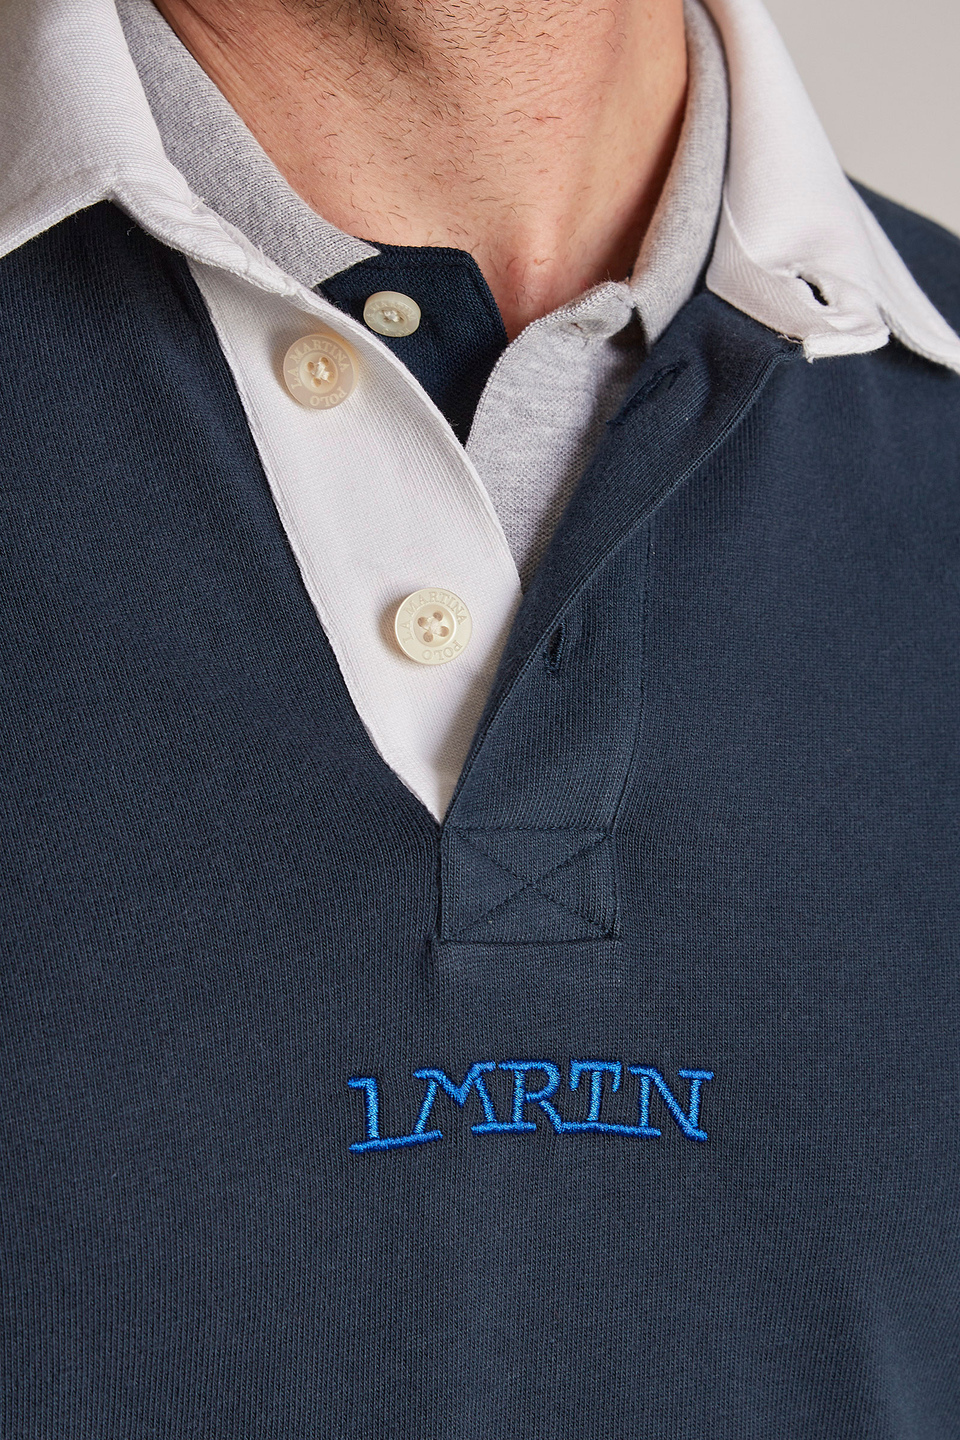 Sudadera de hombre de algodón 100 % con cuello en contraste, modelo oversize | La Martina - Official Online Shop